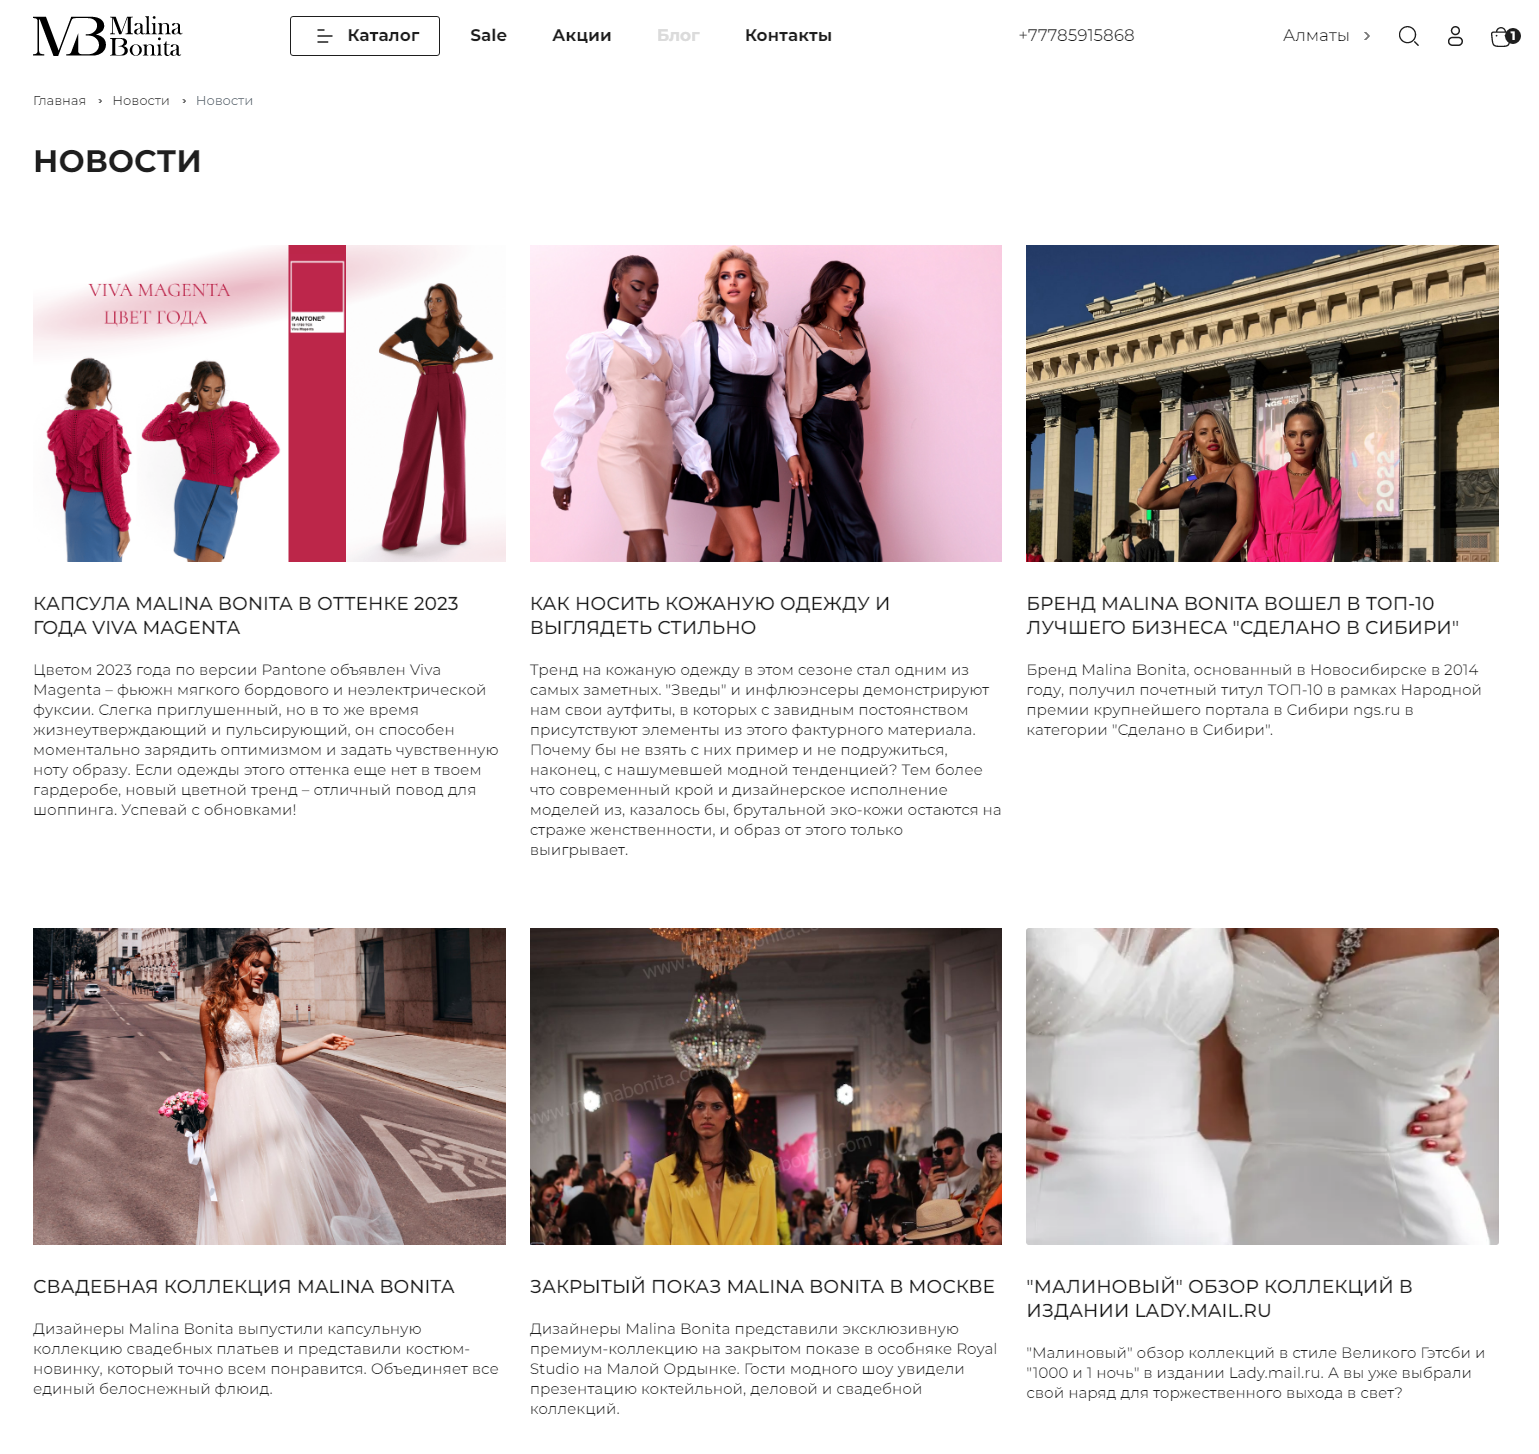 разработка интернет-магазина для бутика модной женской одежды malina bonita